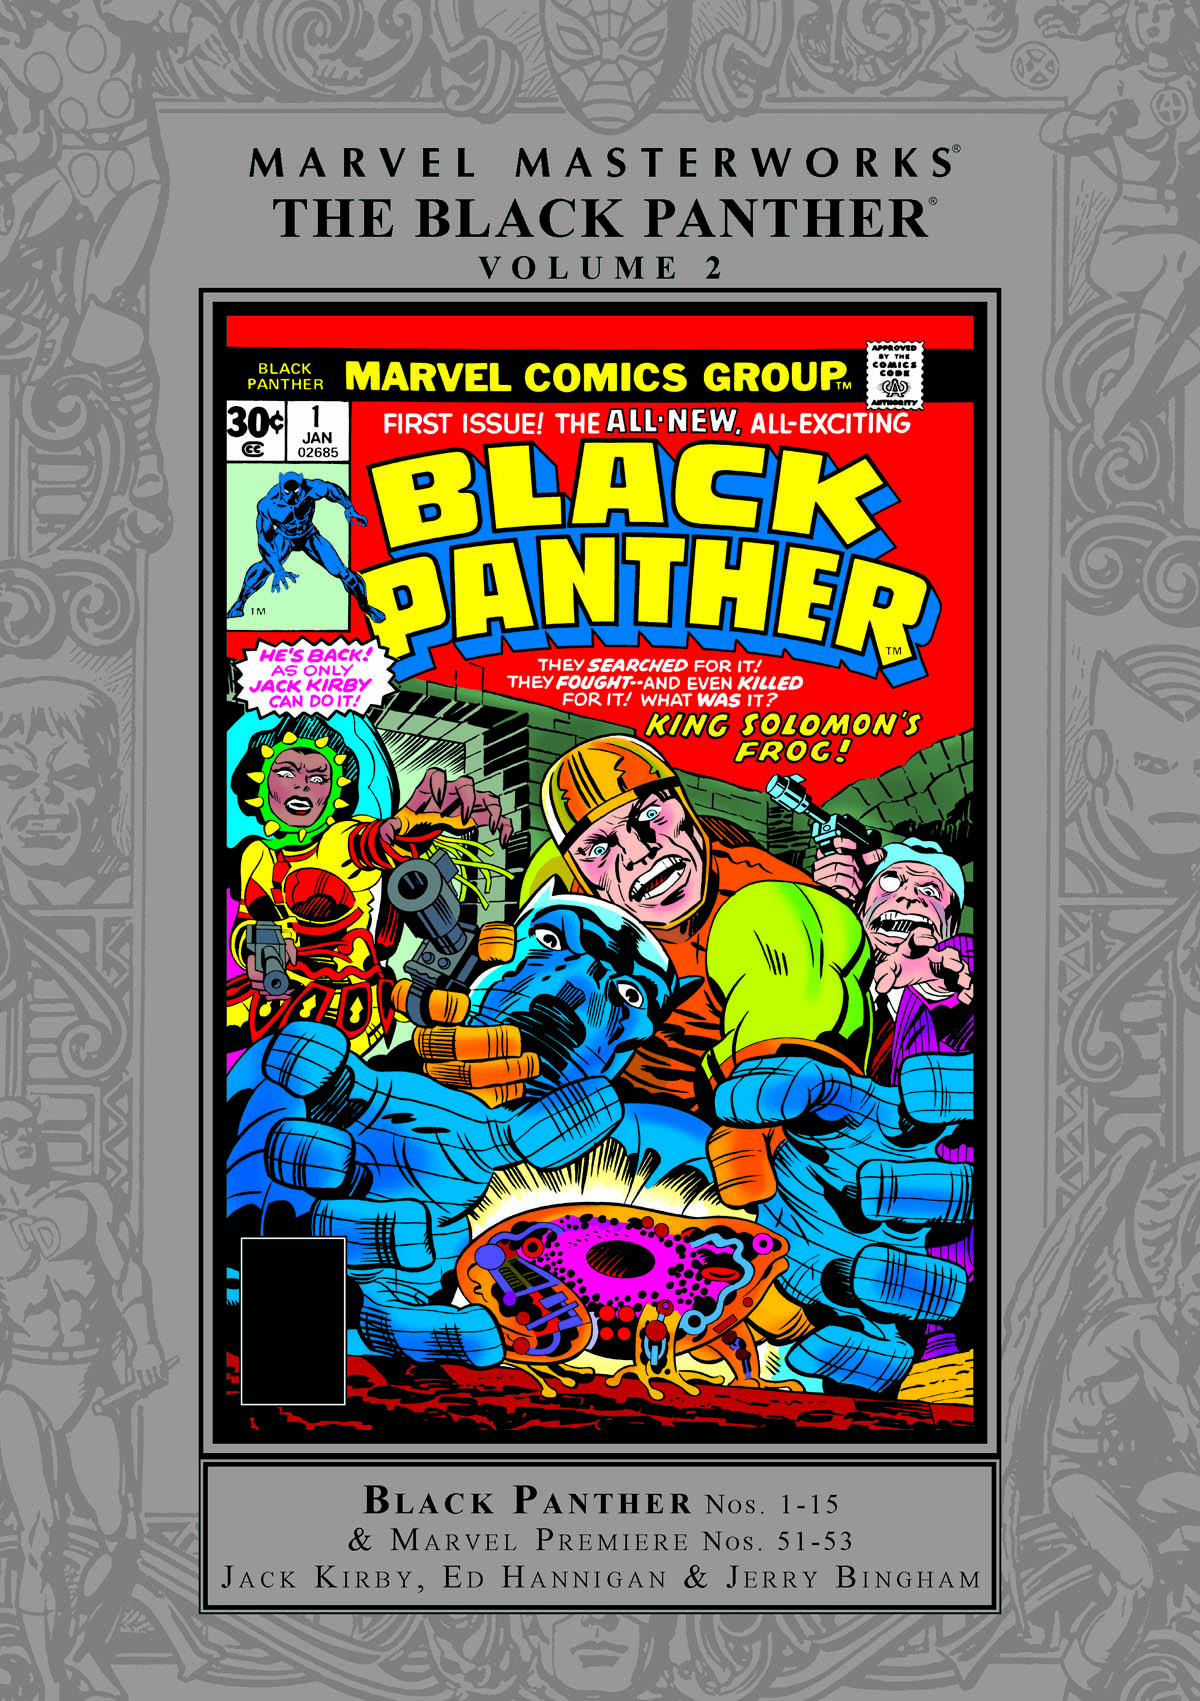 MARVEL MASTERWORKS: THE BLACK PANTHER VOL. 2 HC (Trade Paperback)